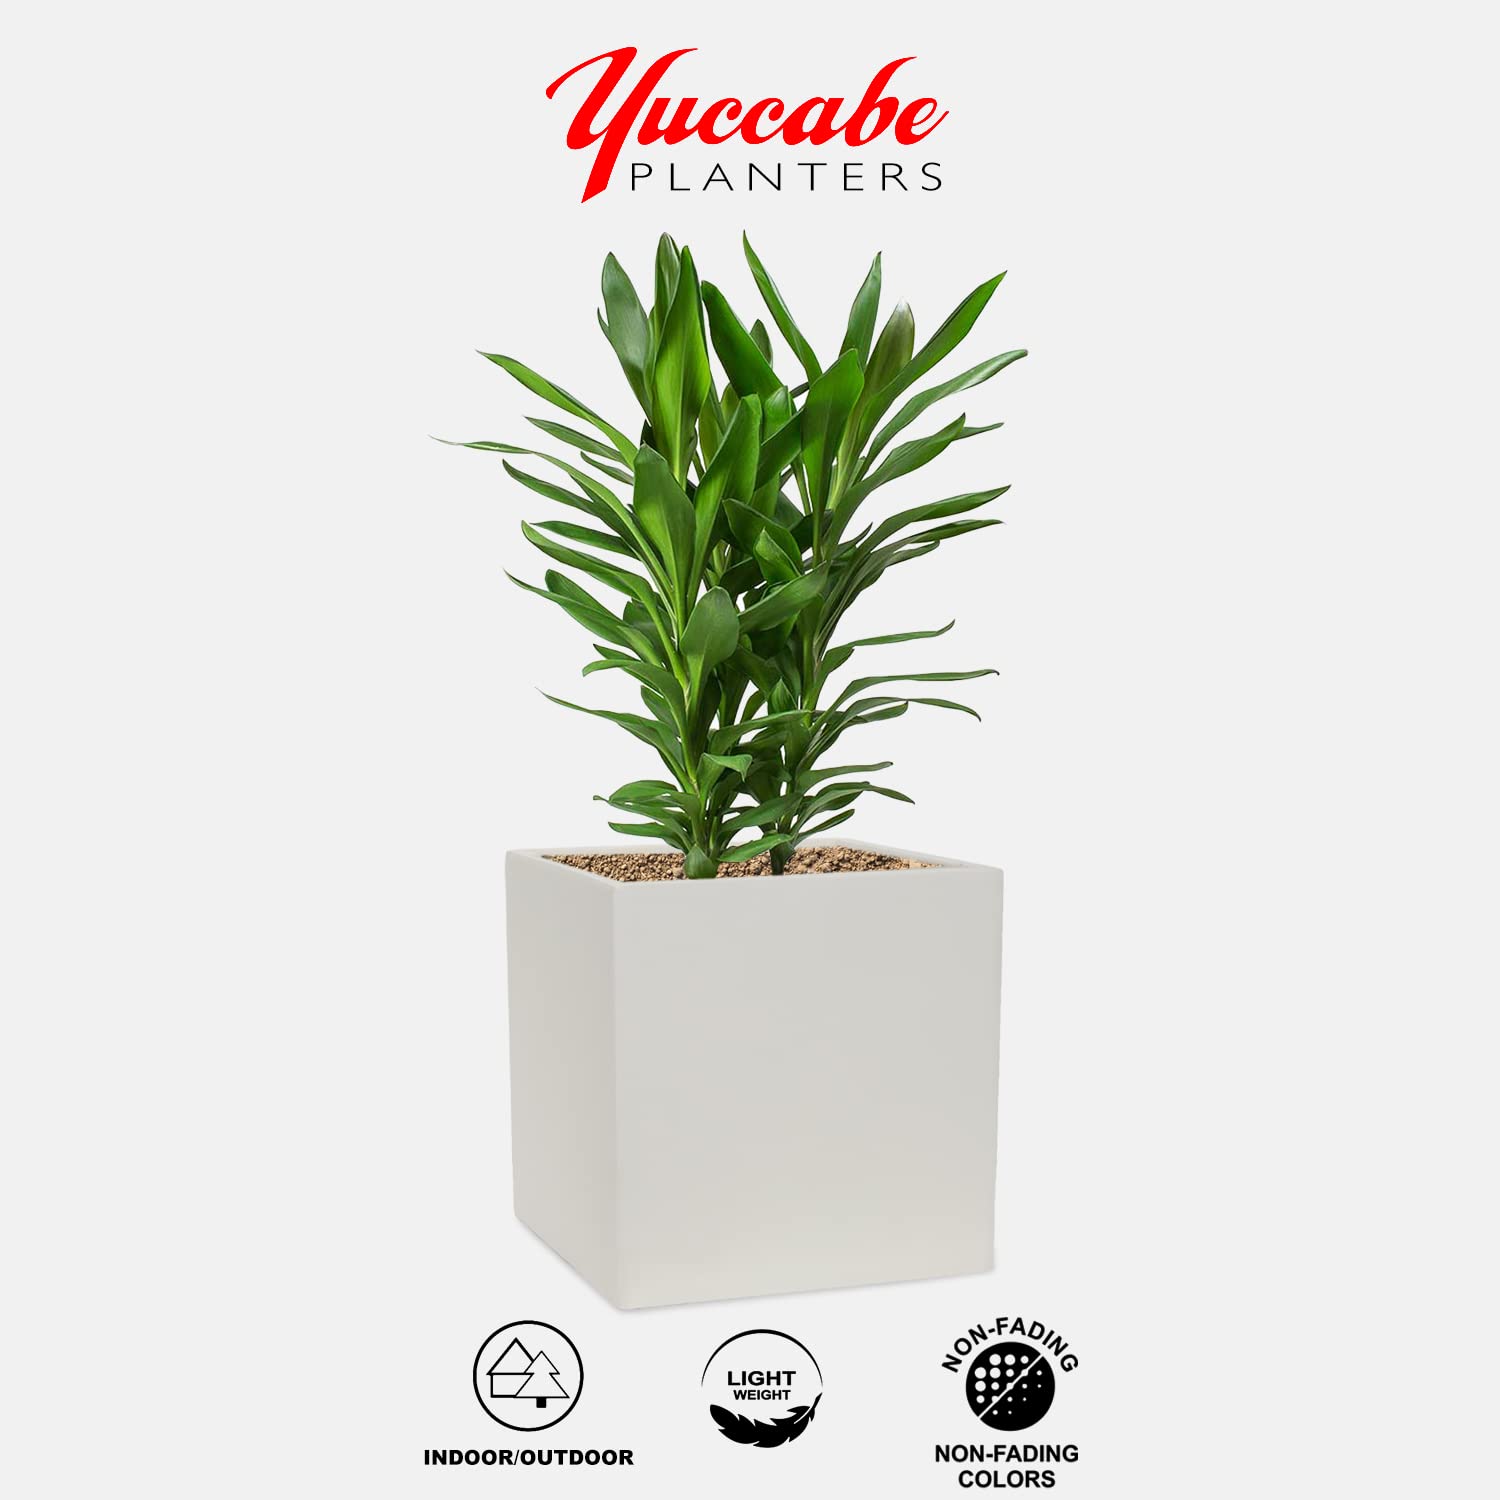 yuccabe italia cube 12 inches planters